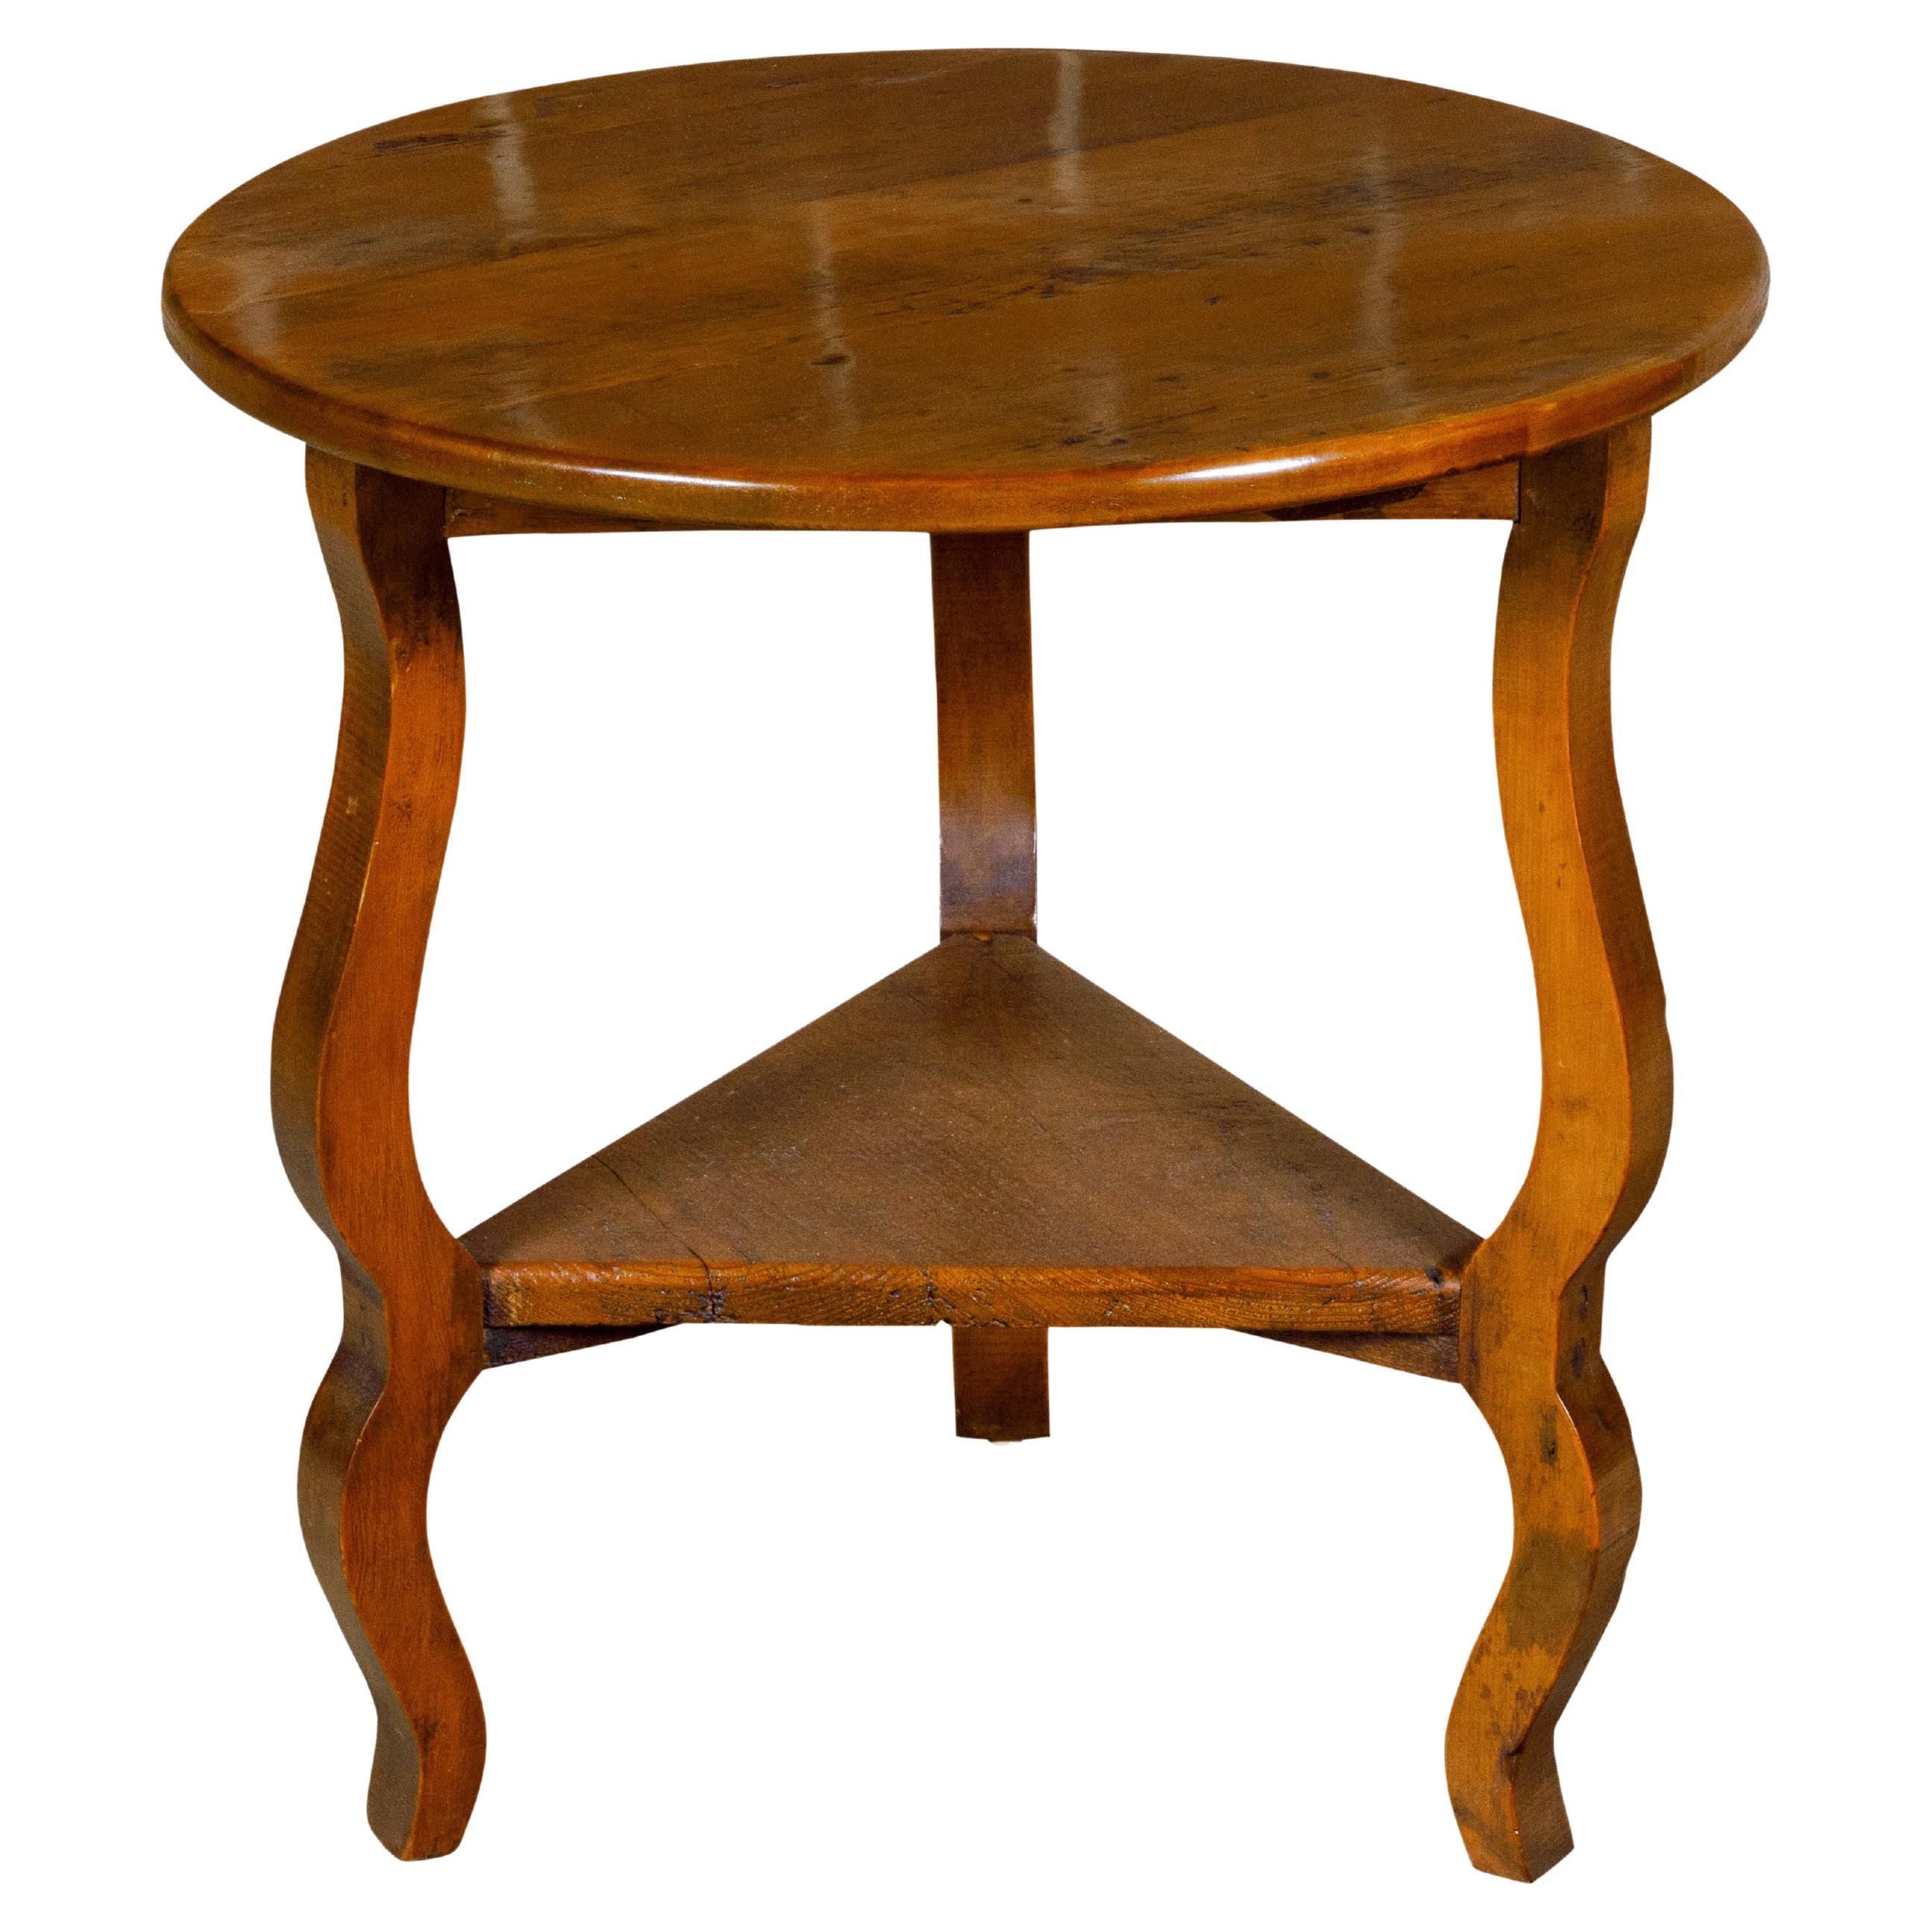 Table d'appoint en pin anglais avec plateau circulaire, pieds incurvés et étagère triangulaire